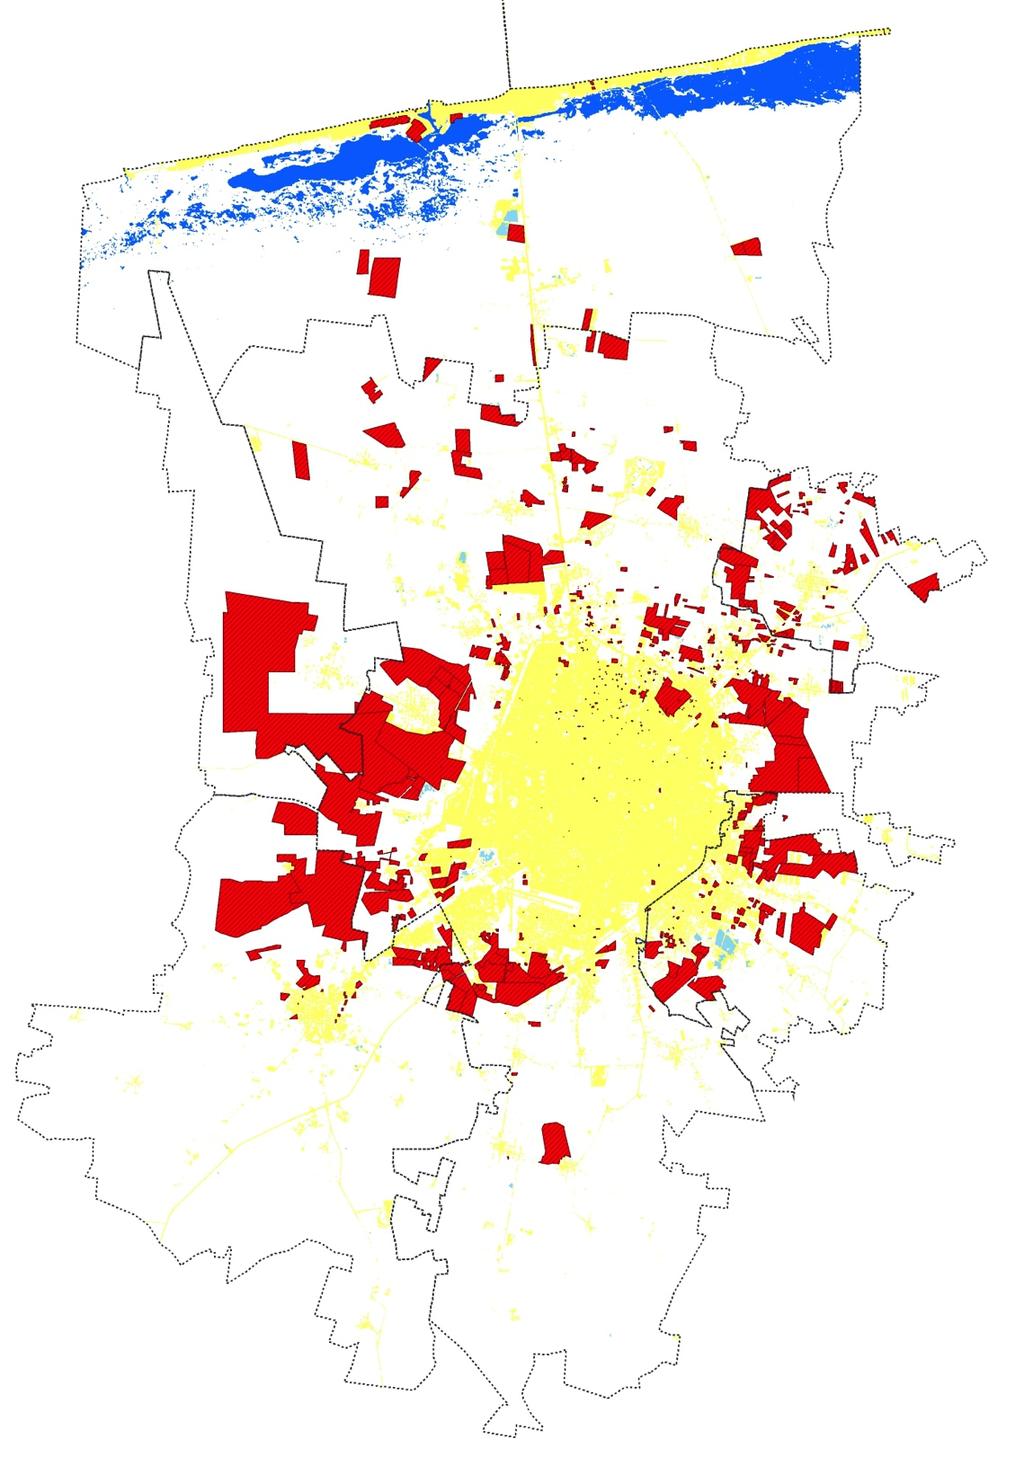 México: Riesgos del Mercado Inmobiliario, 2014 Área Urbana de la ZMM (2014) 24,335 ha Polígonos habitacionales autorizados o en proceso de autorización (2014): 15,678 ha Vacíos urbanos: 2,510 ha